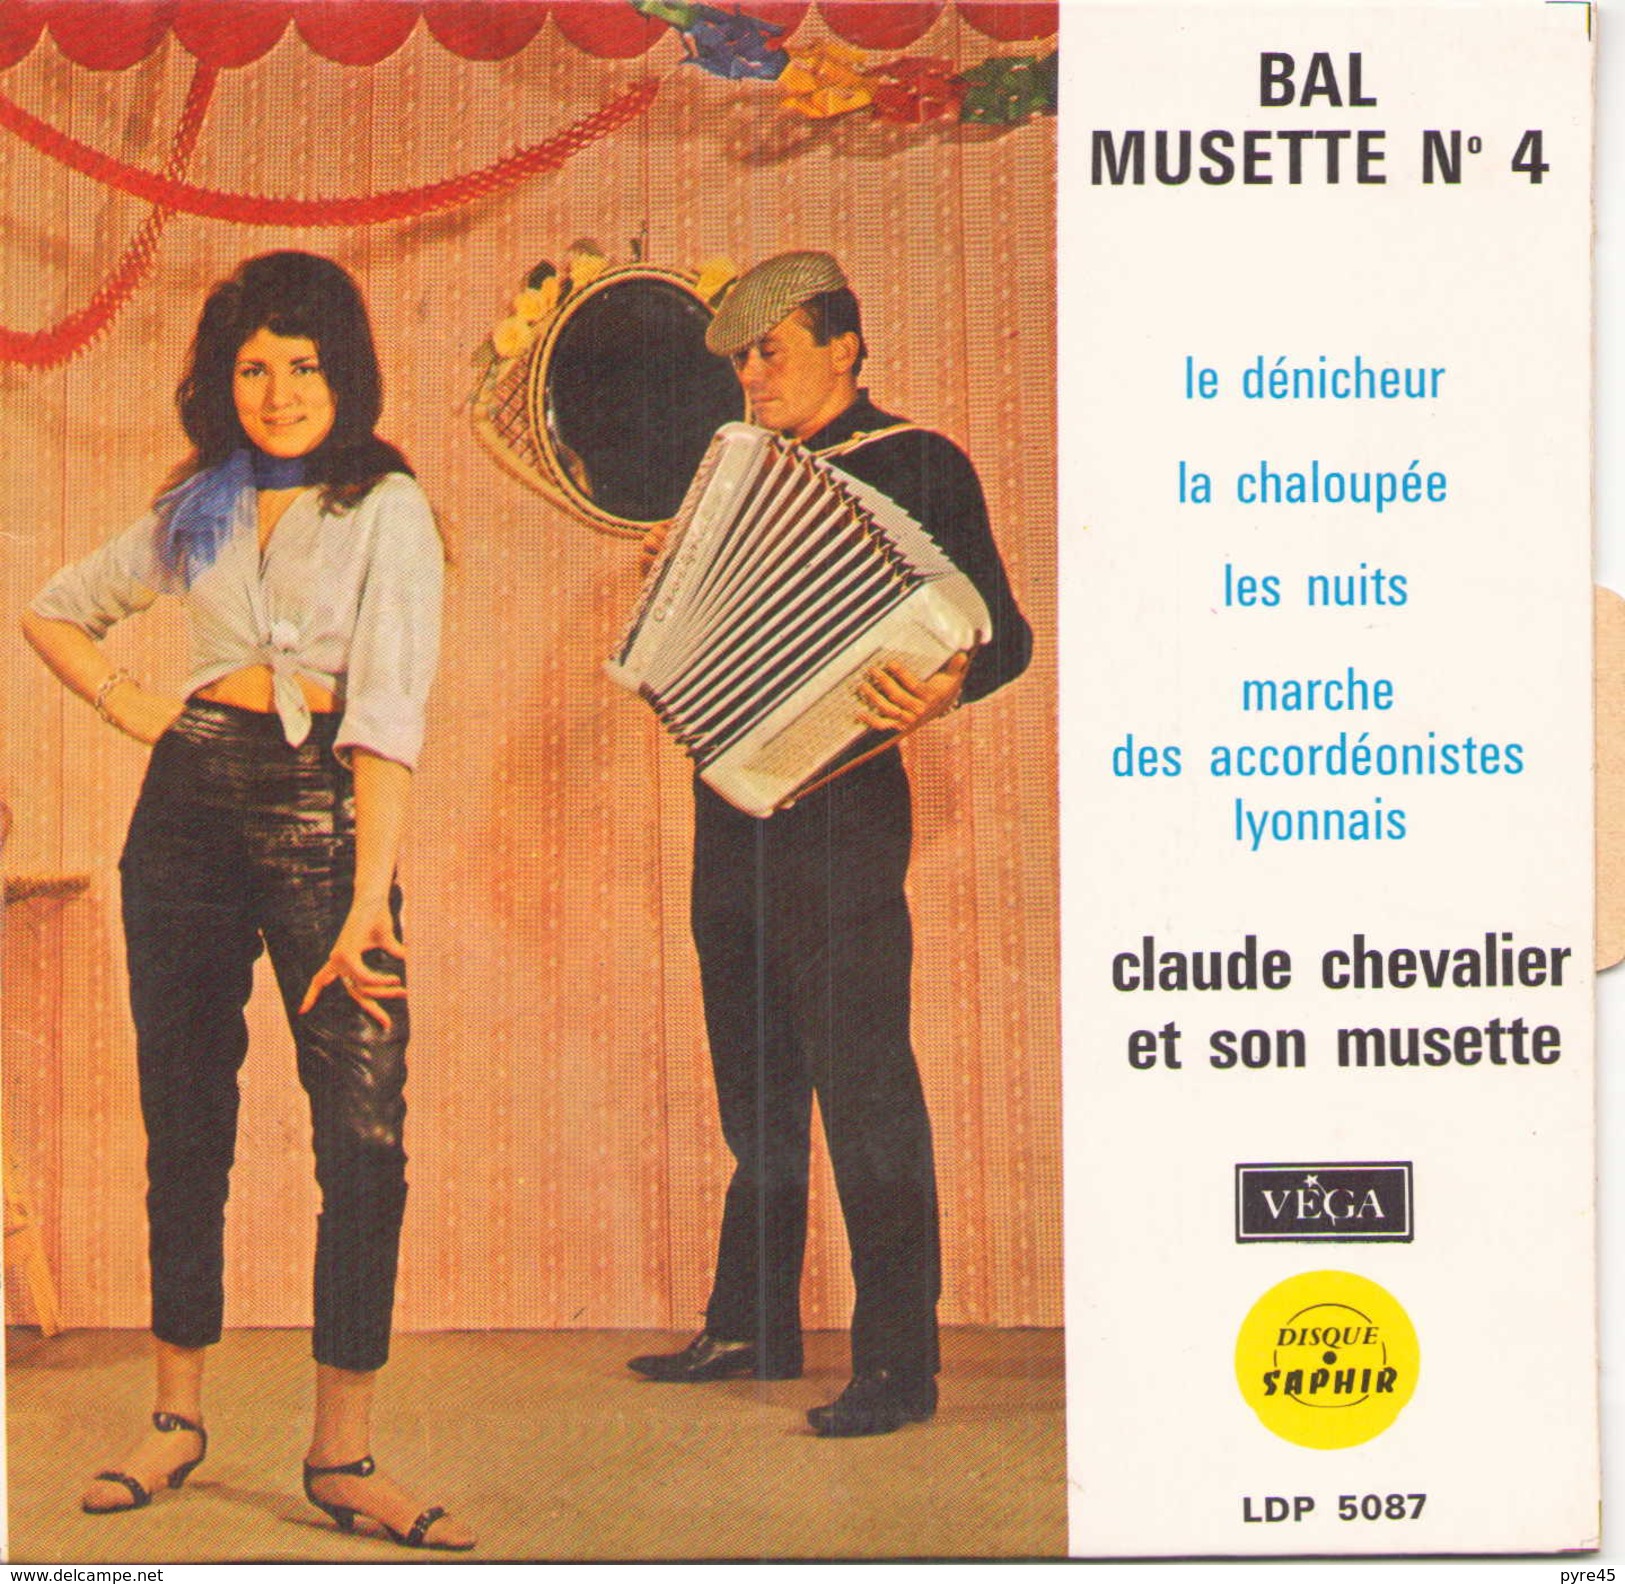 EP 45 TOURS CLAUDE CHEVALIER BAL MUSETTE N° 4 LE DENICHEUR / LA CHALOUPEE + 2 VEGA LDP 5087 - Humour, Cabaret